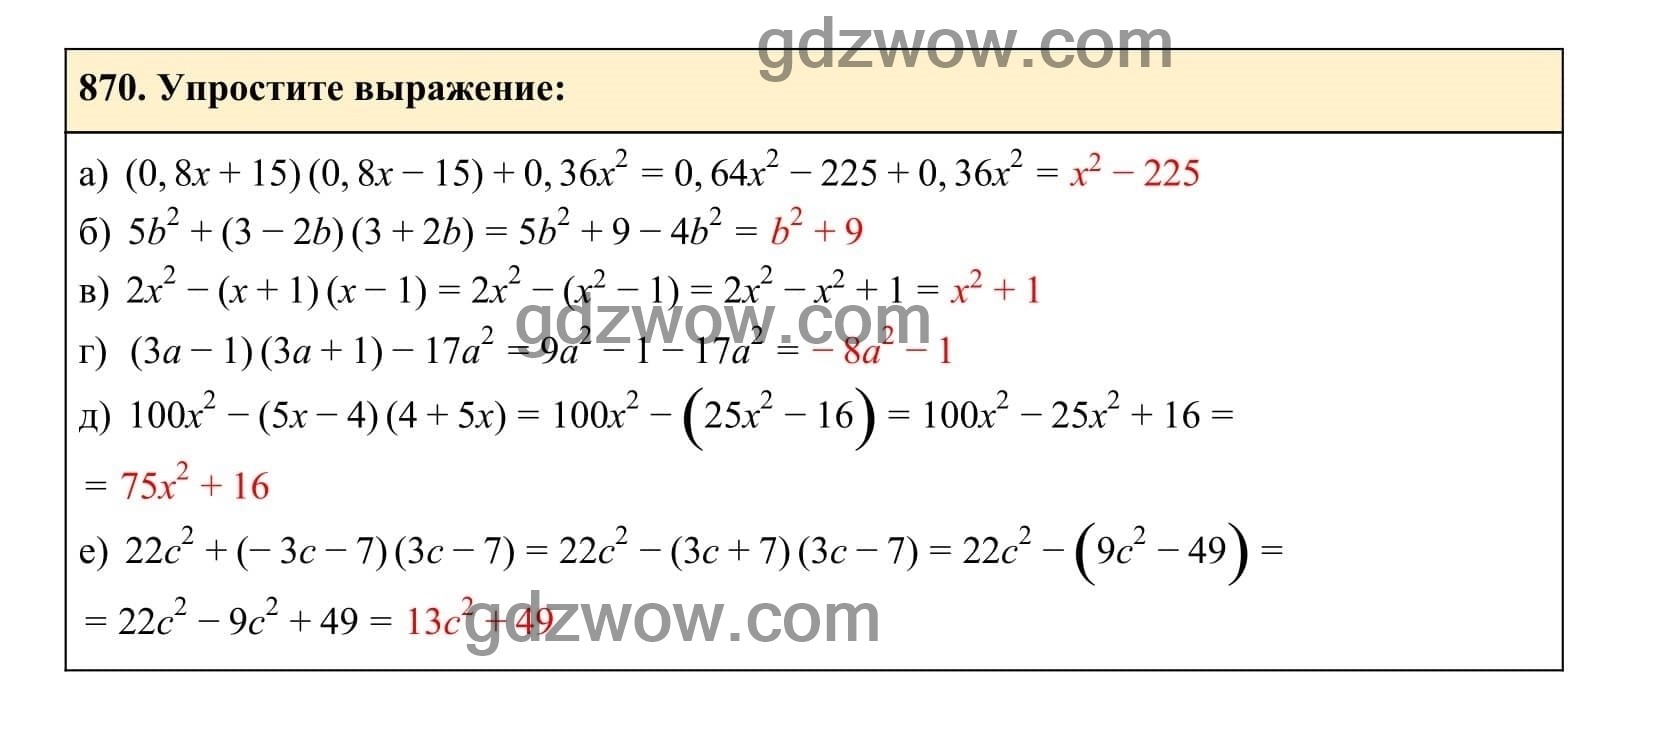 Упражнение 870 - ГДЗ по Алгебре 7 класс Учебник Макарычев (решебник) - GDZwow